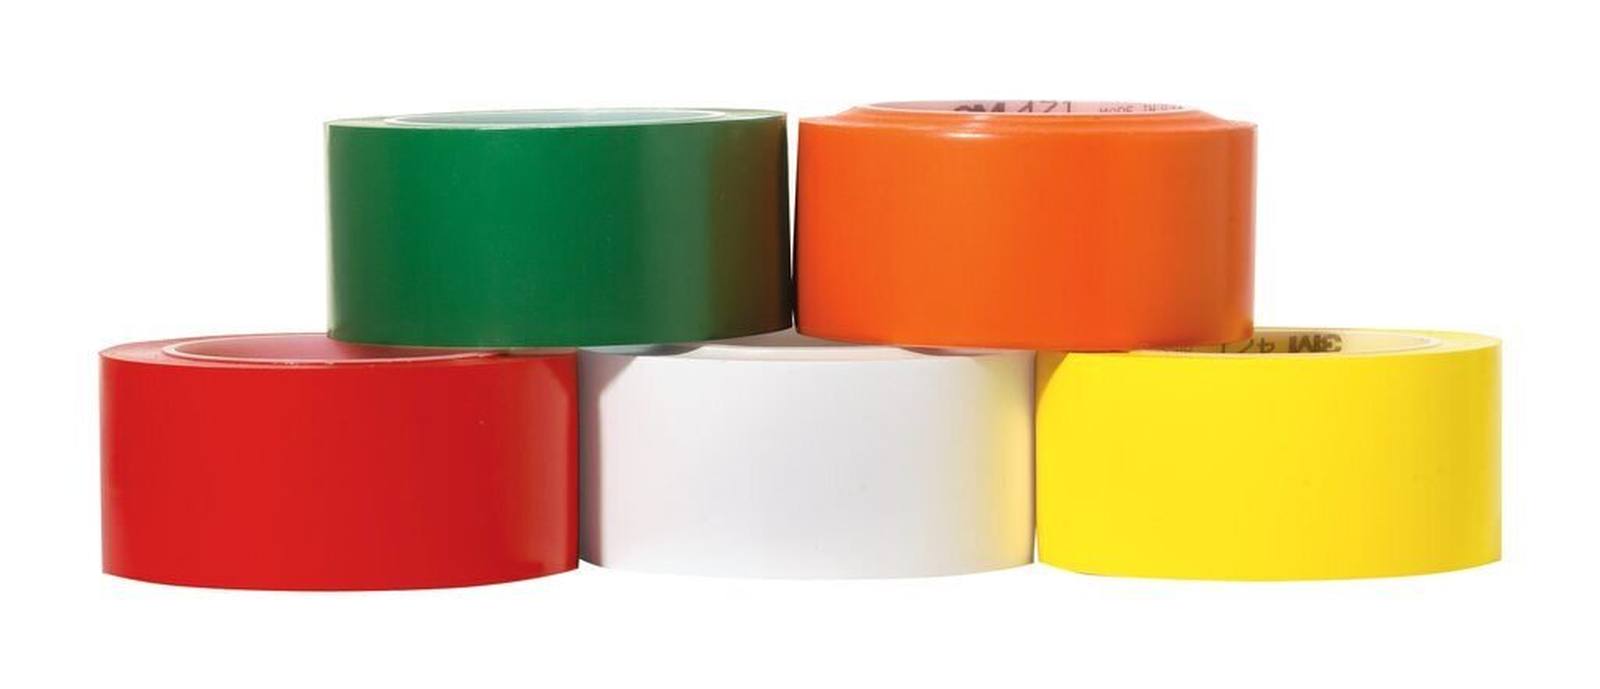 3M ruban adhésif en PVC souple 471 F, orange, 50 mm x 33 m, 0,13 mm